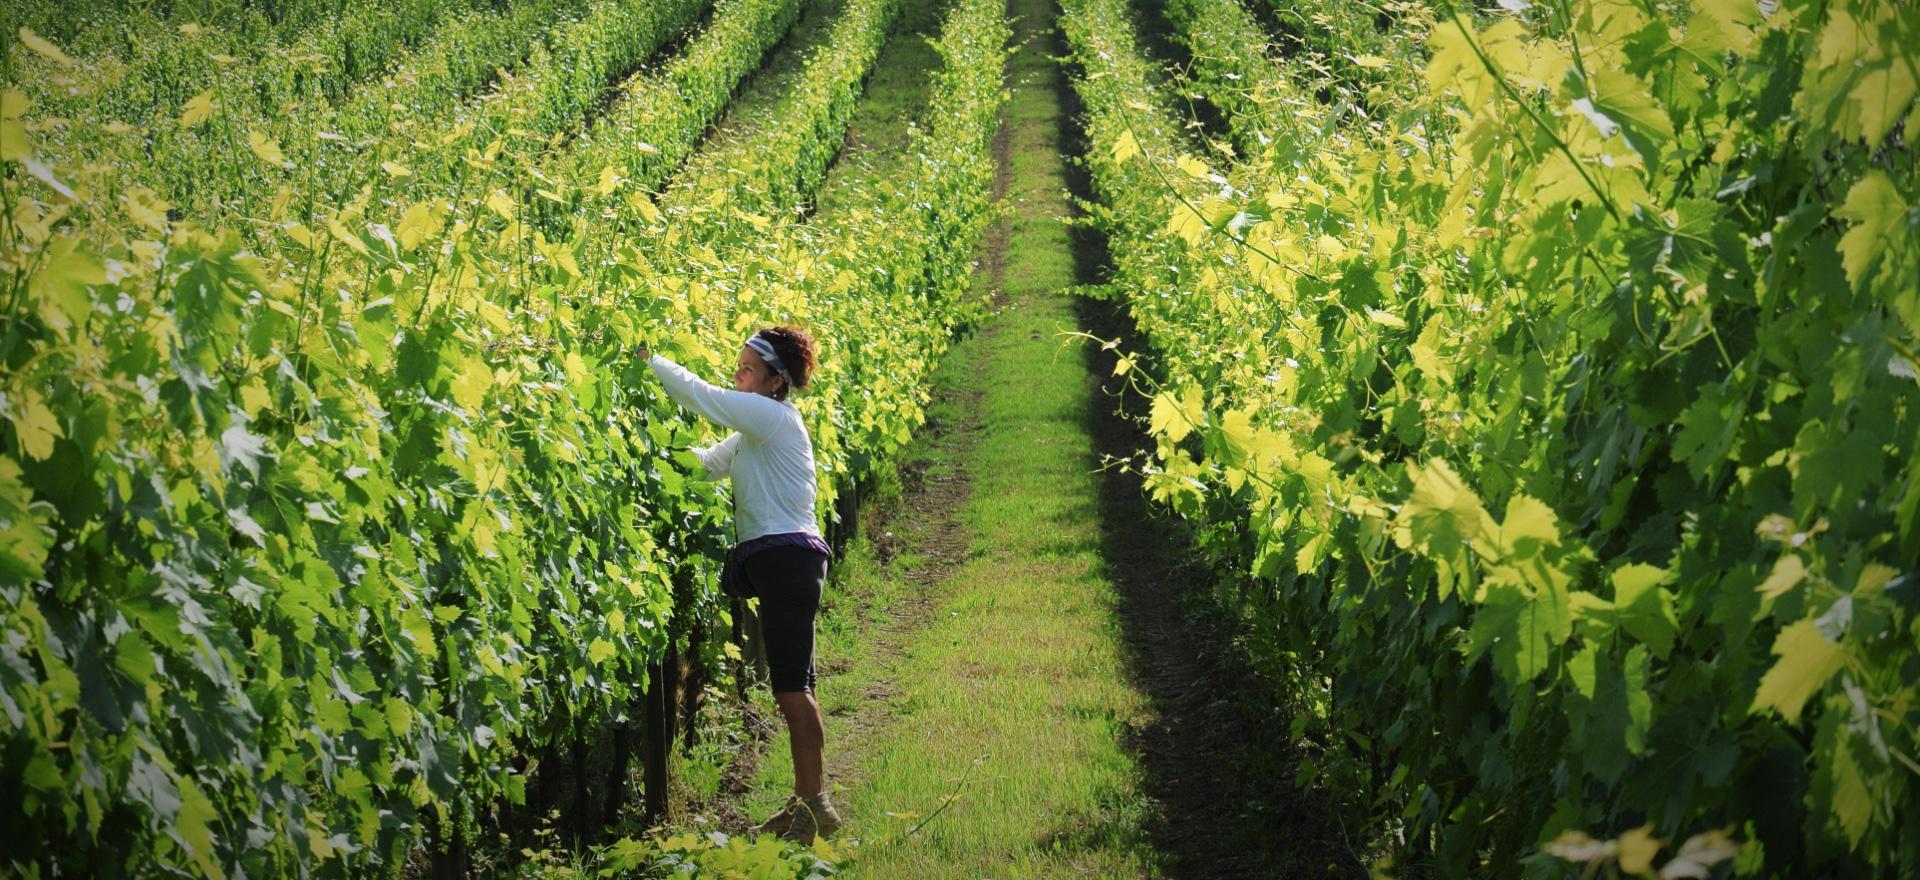 Agriturismo tussen wijngaarden ten zuiden van Siena